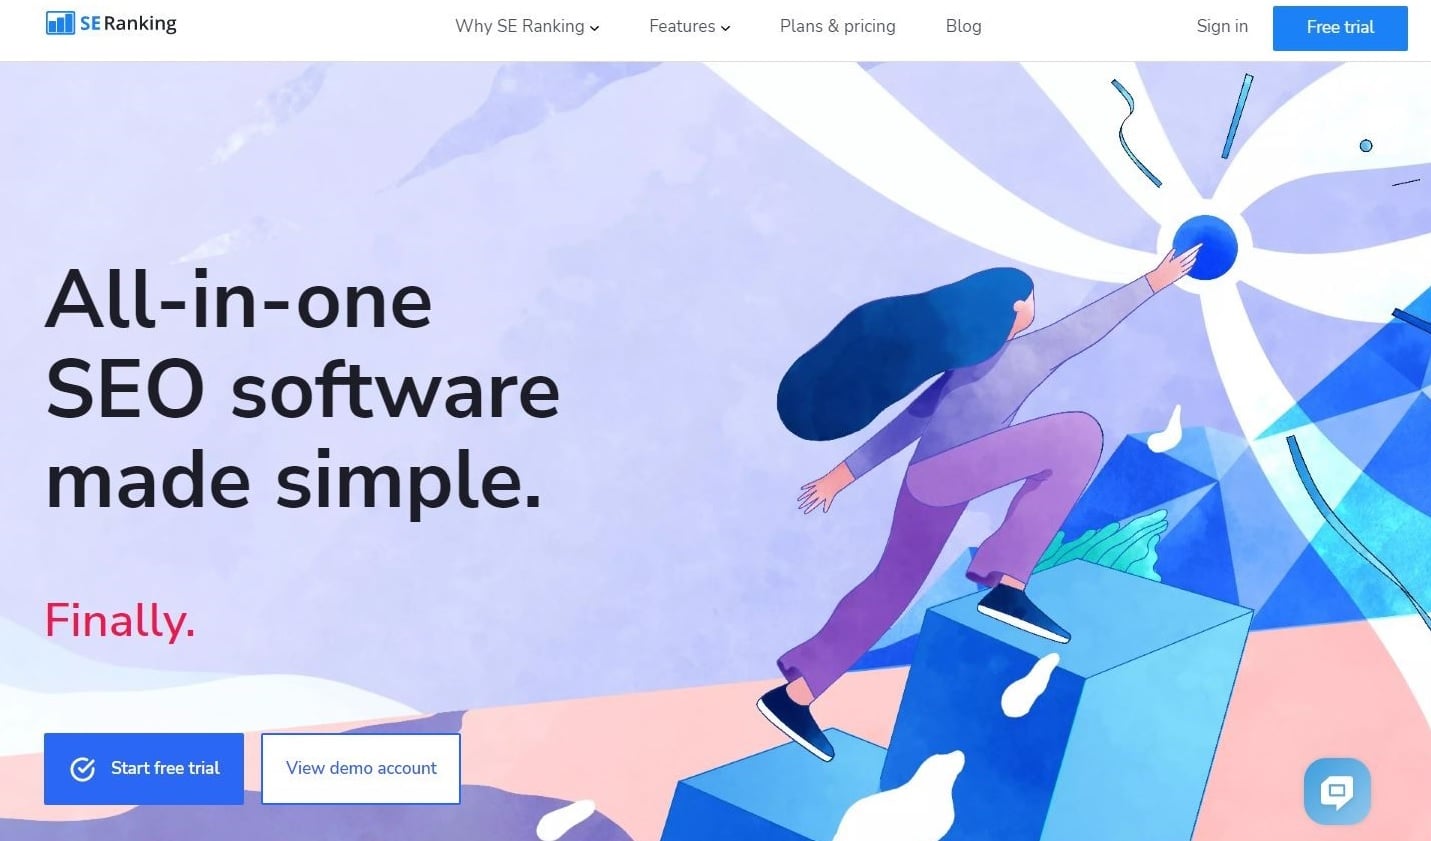 Homepage di SE Ranking con il motto "All-in-one SEO software made simple."